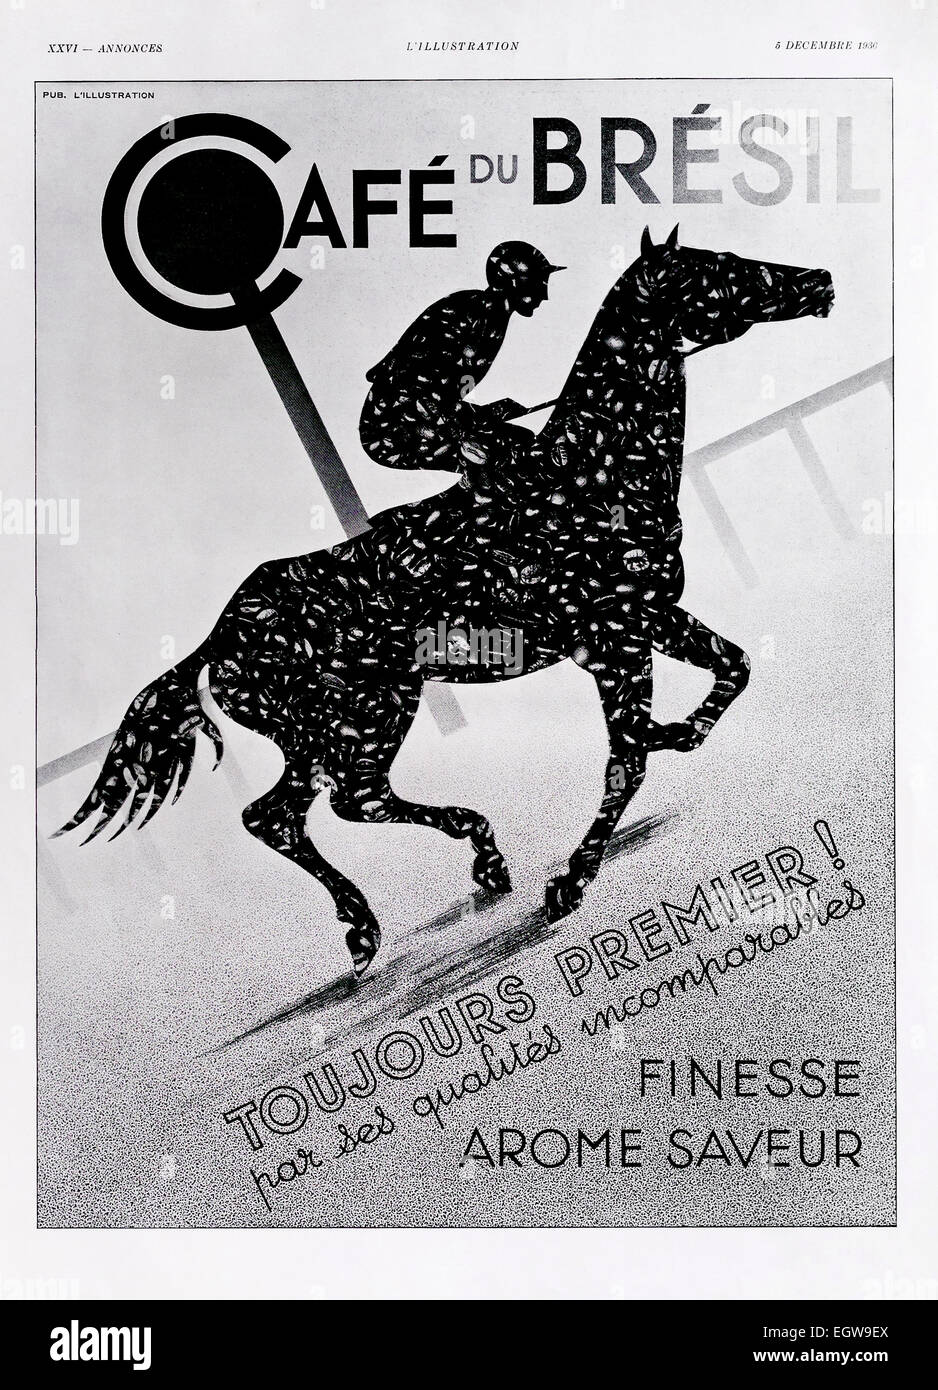 1930 Annuncio per "Cafe du Bresil" caffè dal francese "L'illustrazione" rivista. Foto Stock